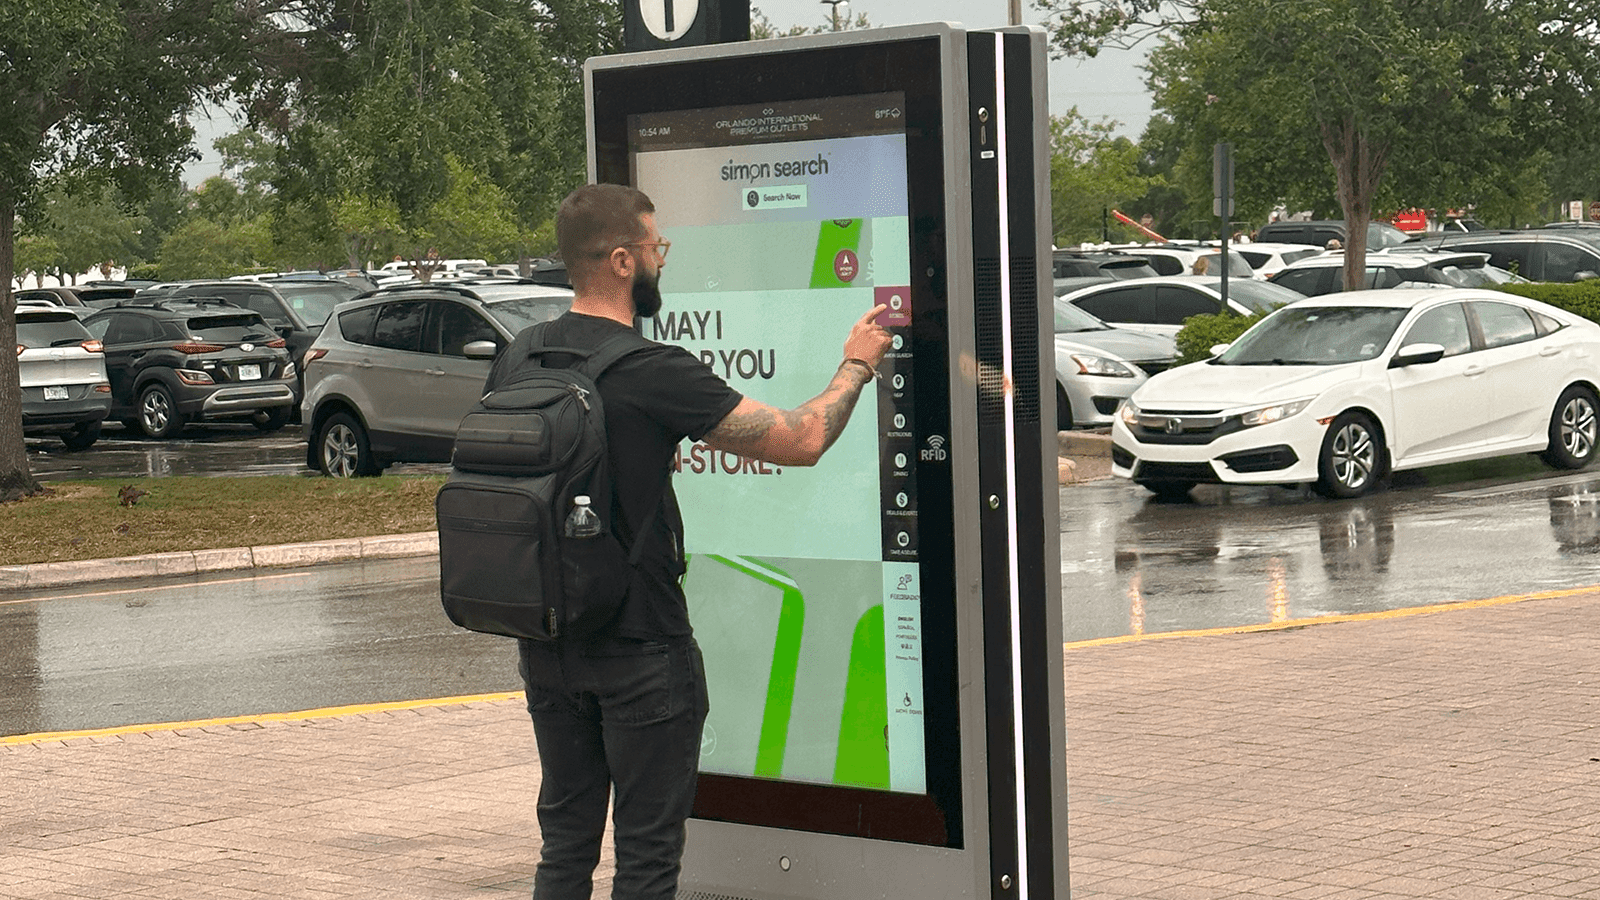 PCAP Wayfinding Kiosk for Outdoor